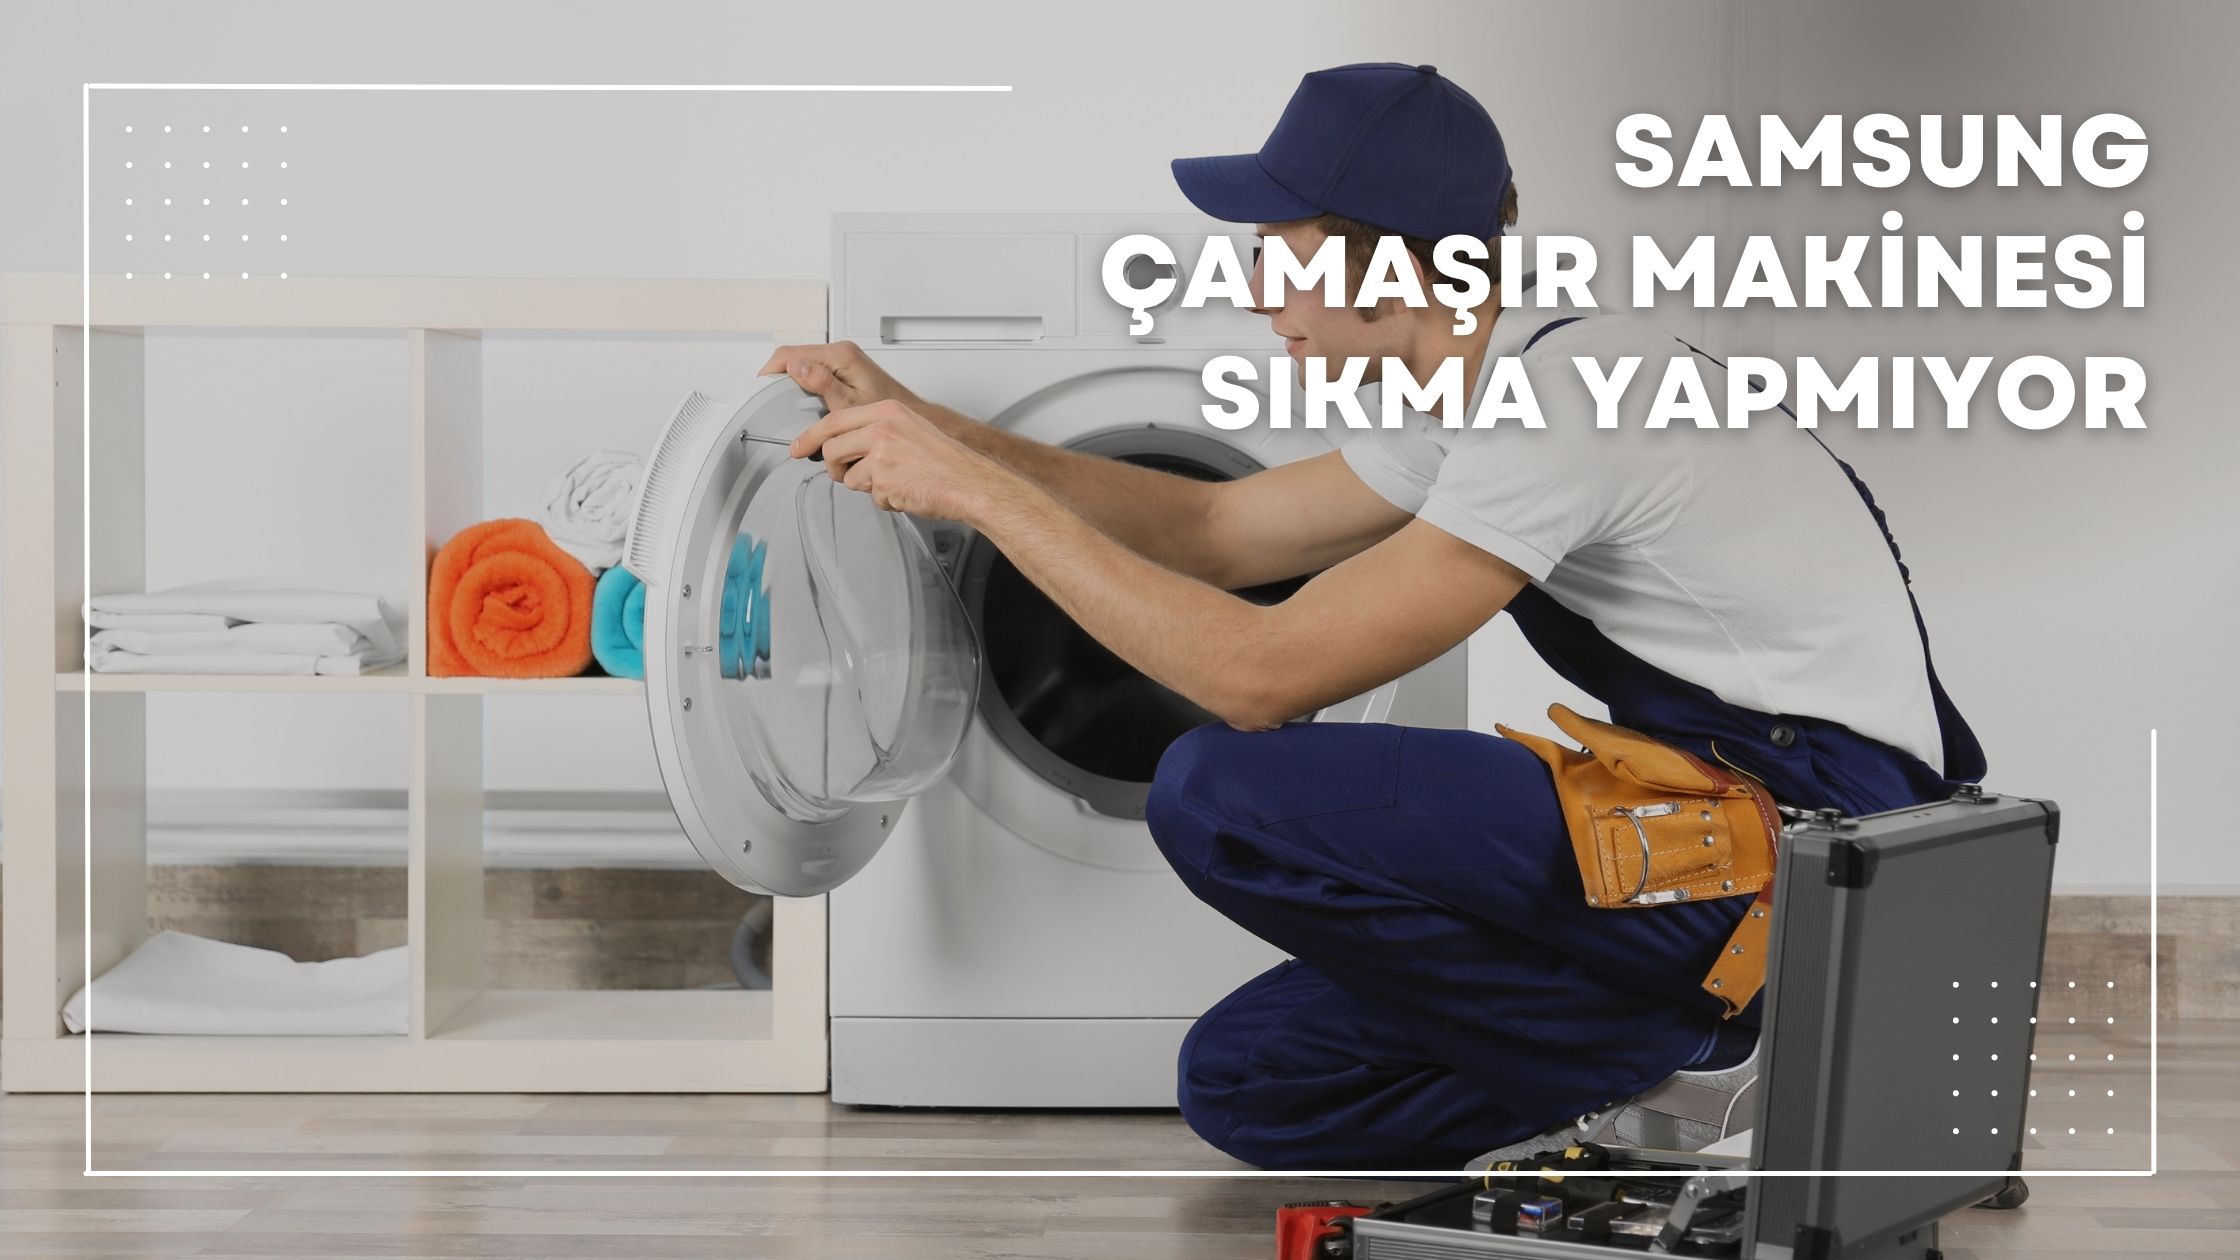 Samsung Çamaşır Makinesi Sıkma Yapmıyor